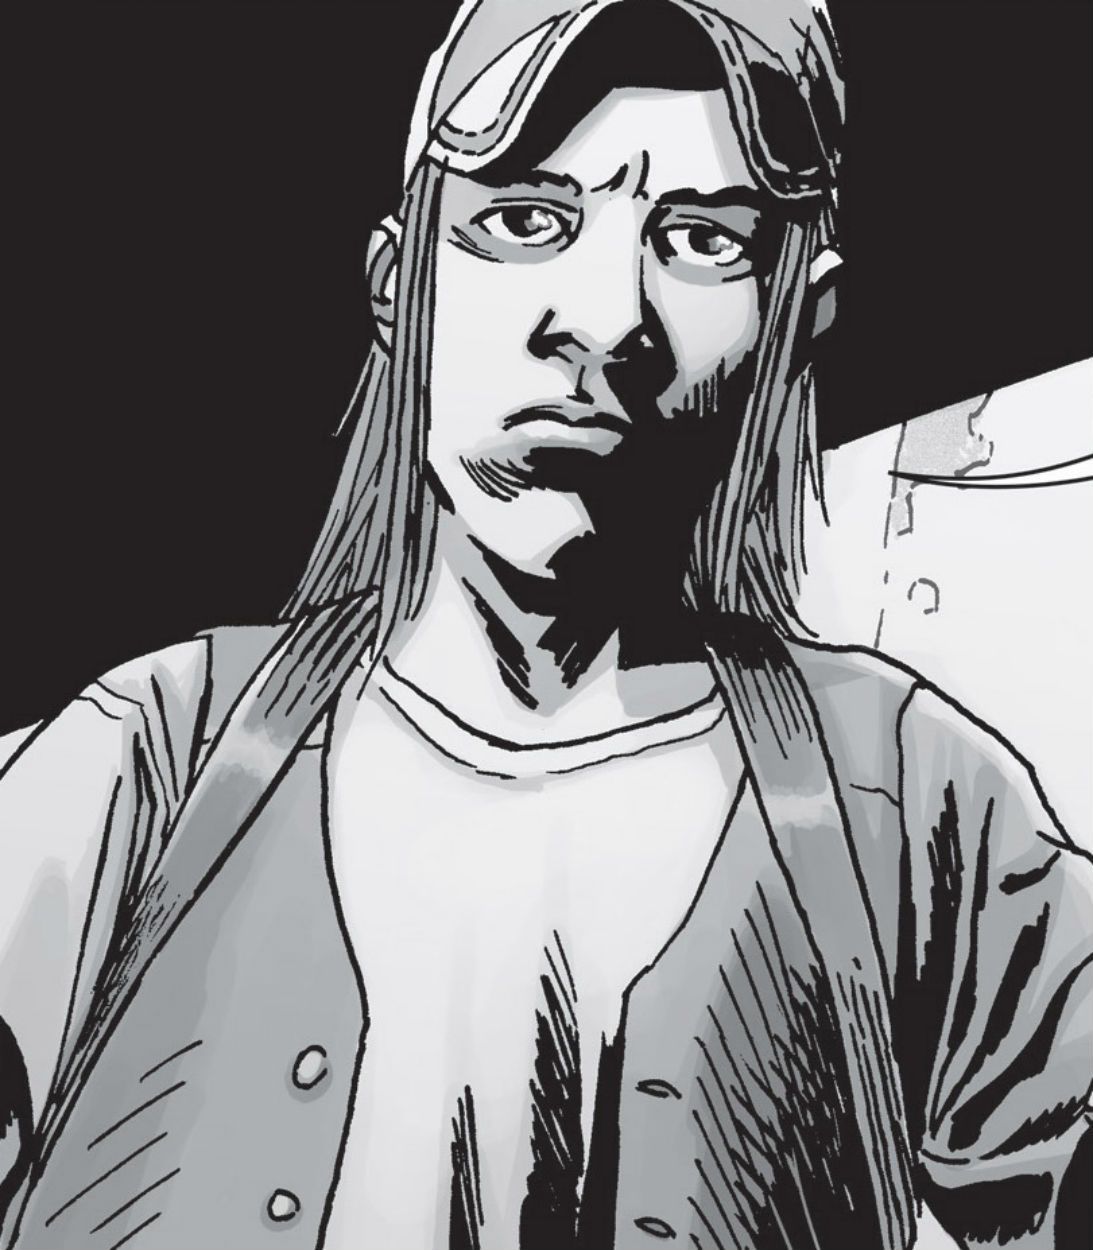 Brandon releases Negan in The Walking Dead comics VERTICAL